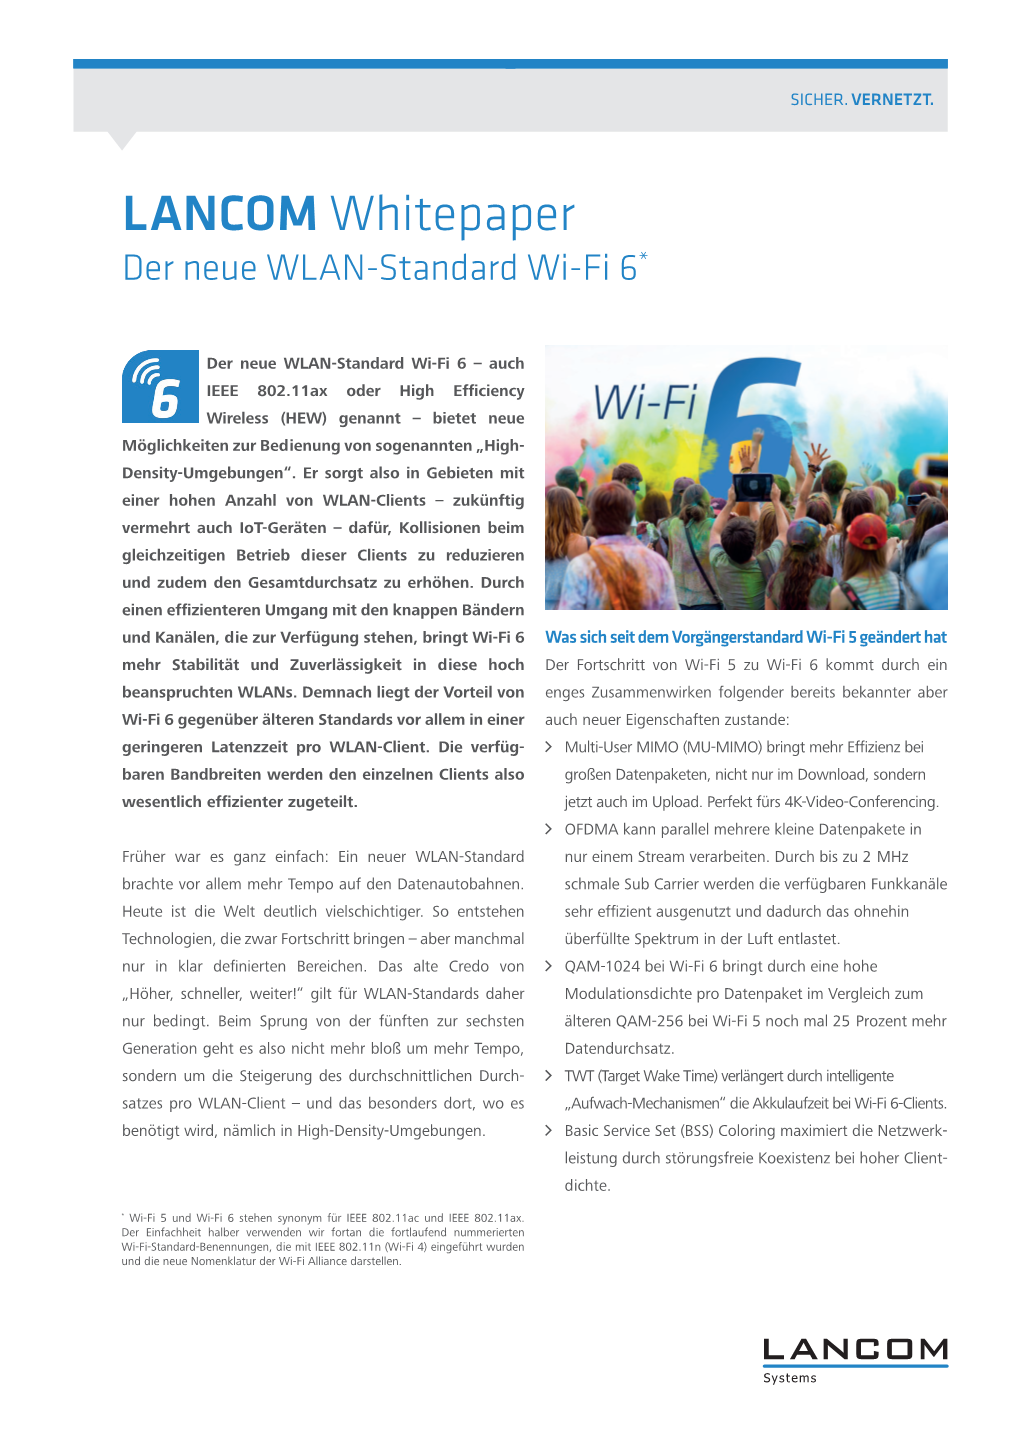 LANCOM Whitepaper – Der Neue WLAN-Standard Wi-Fi 6